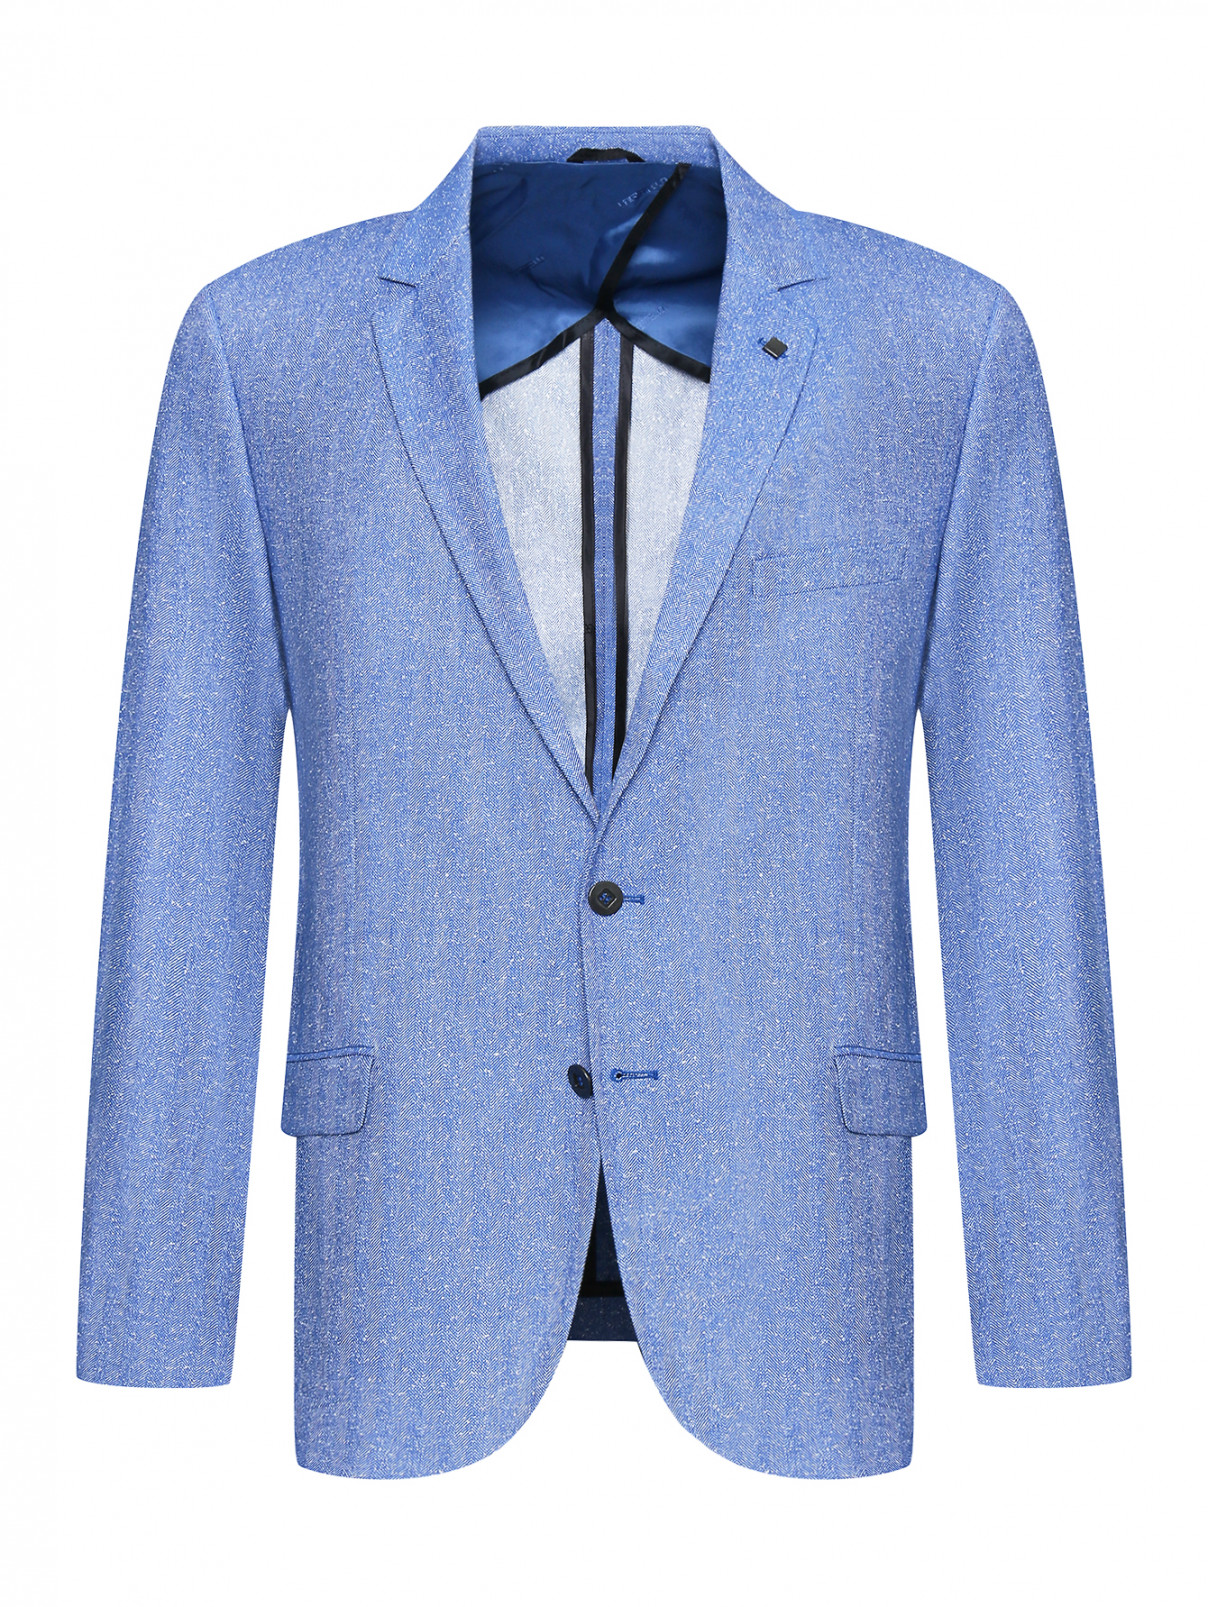 Пиджак из хлопка с узором Lagerfeld  –  Общий вид  – Цвет:  Узор